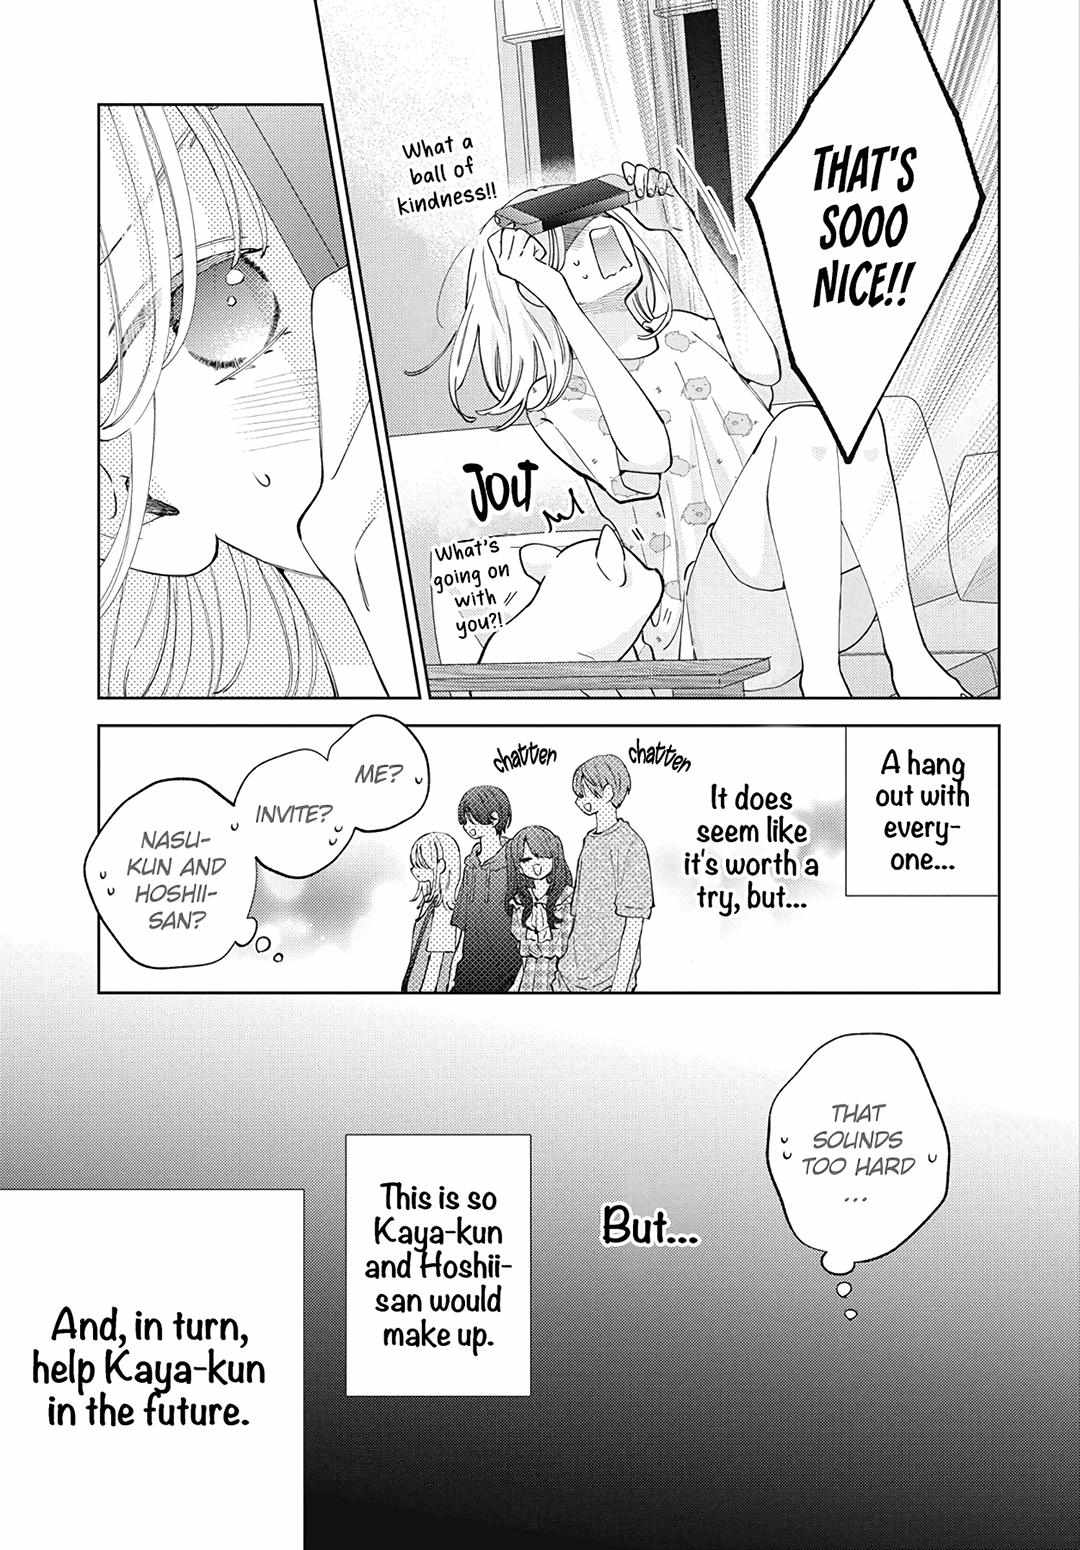 Haru No Arashi To Monster - 24 page 13-7679e7cc